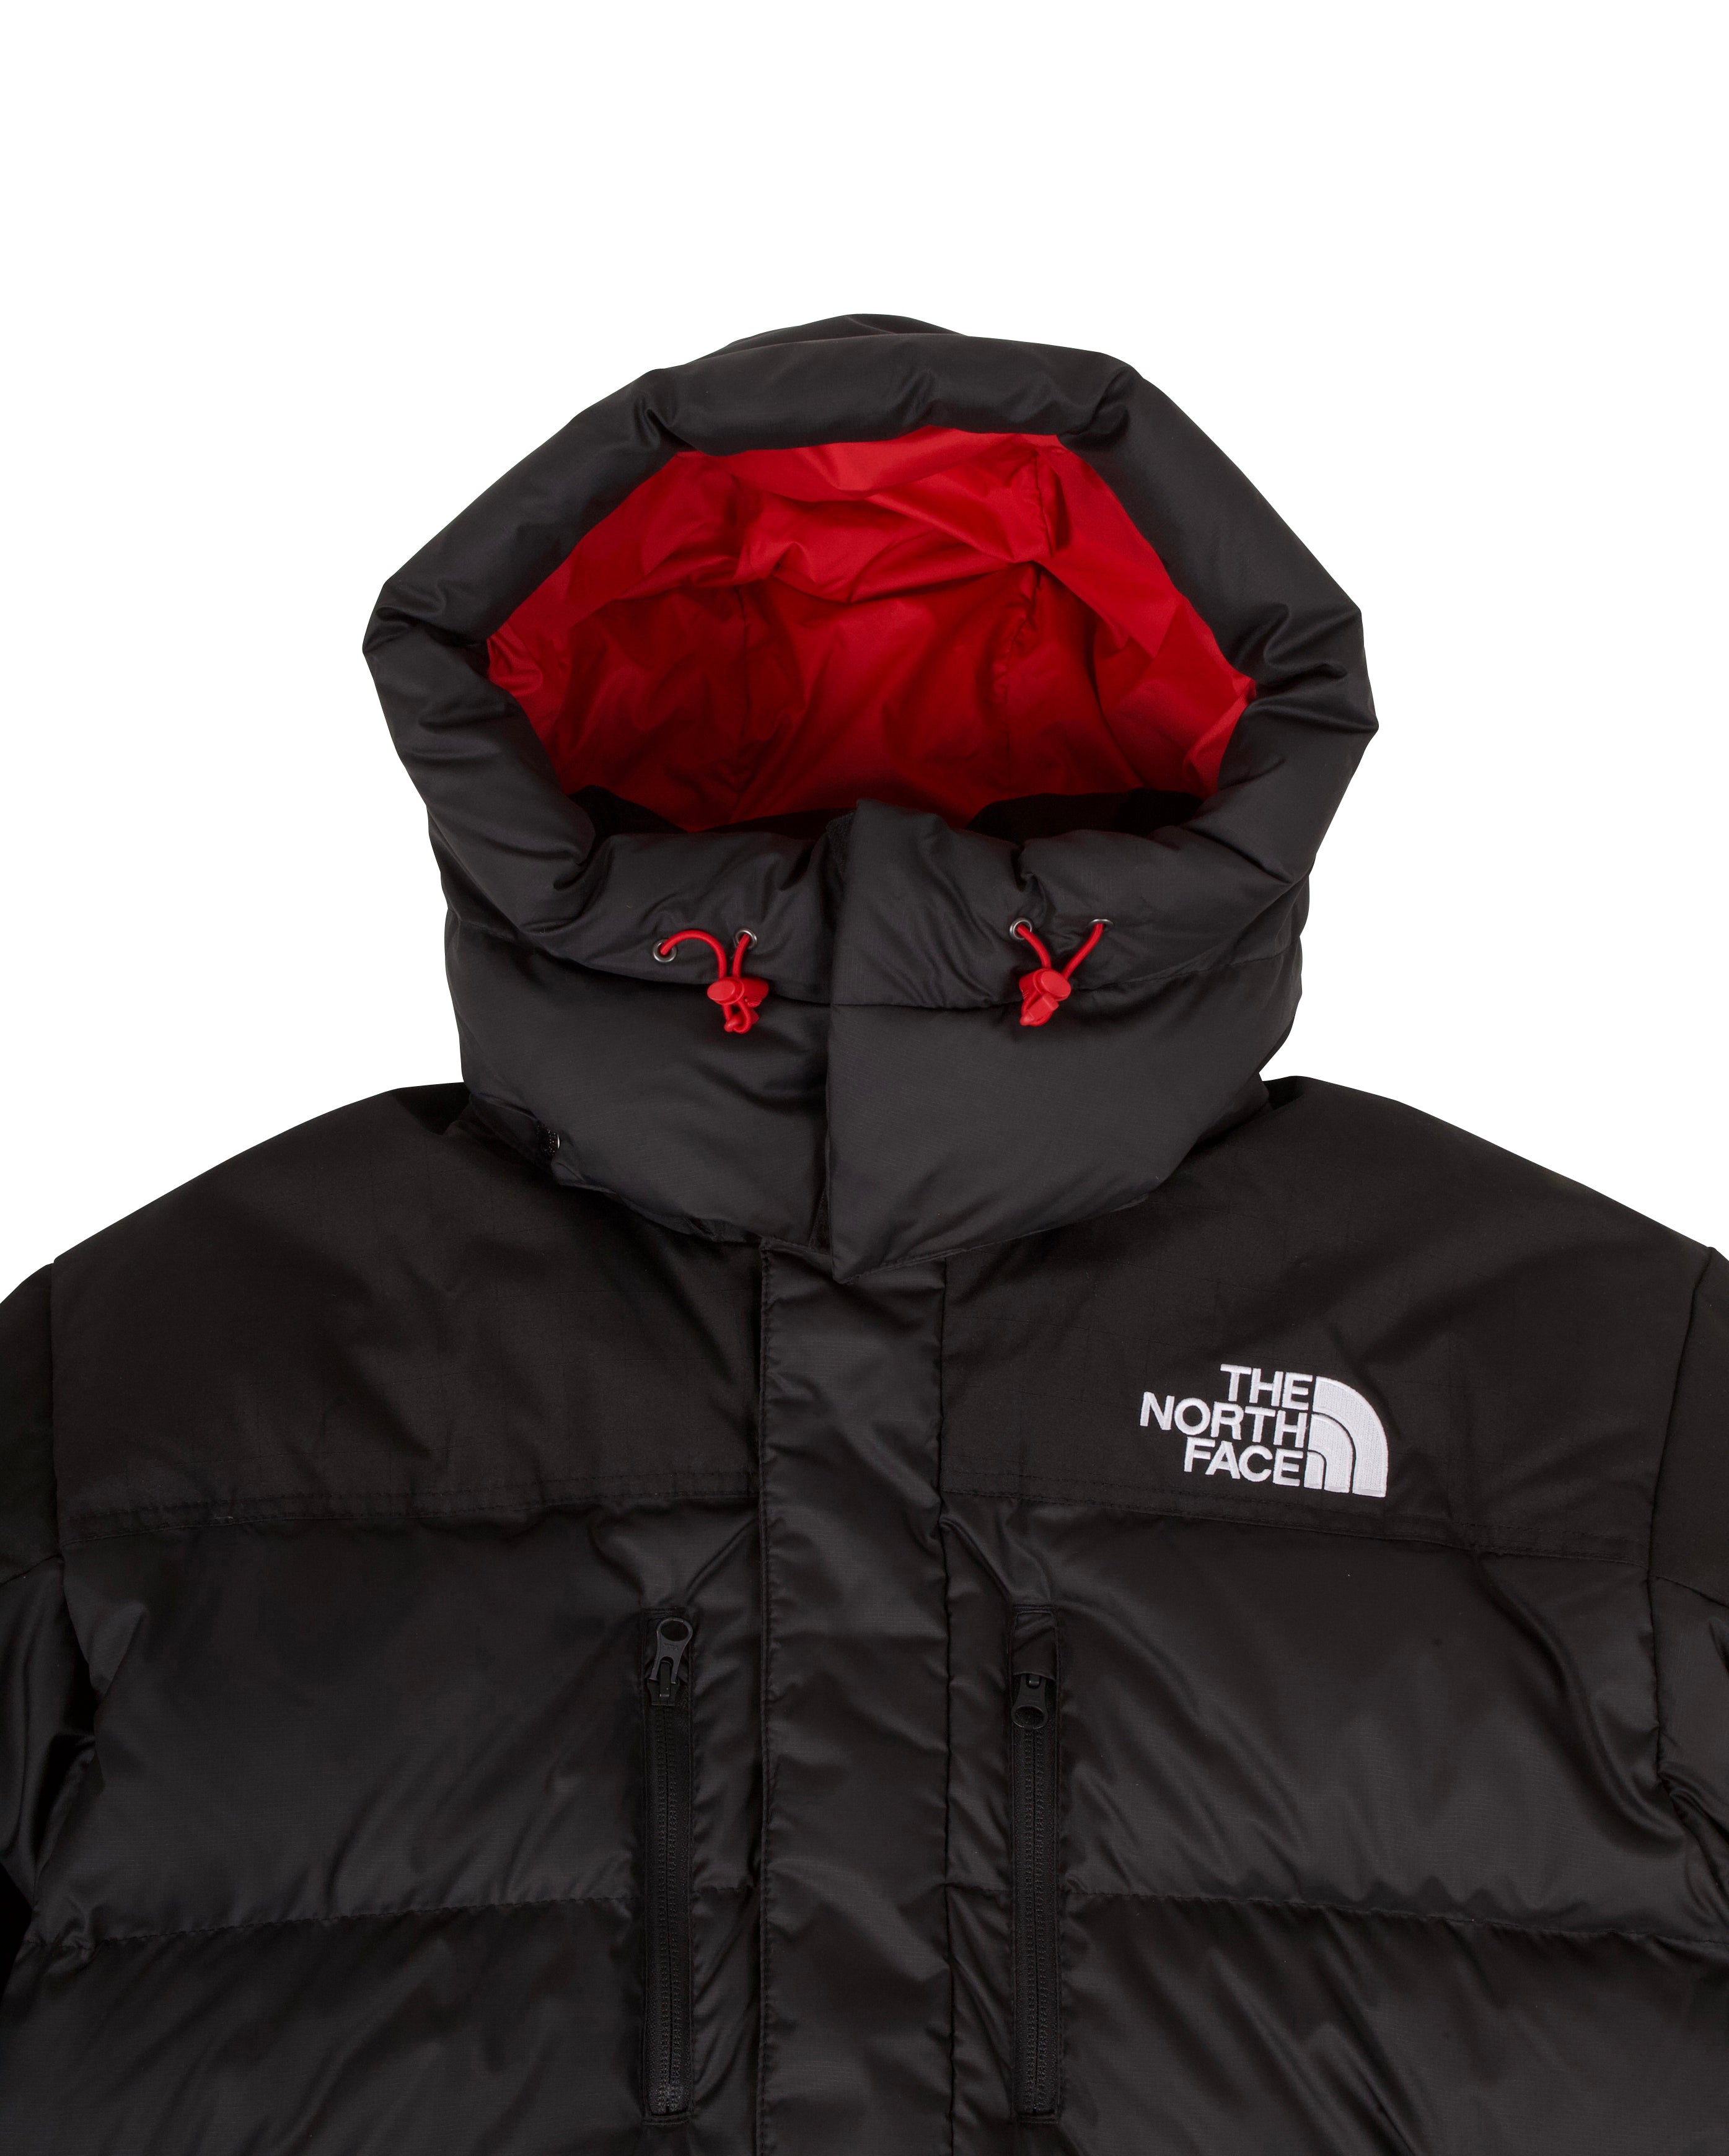 Veste coupe-vent zippée The North Face dans votre boutique DM'Sports